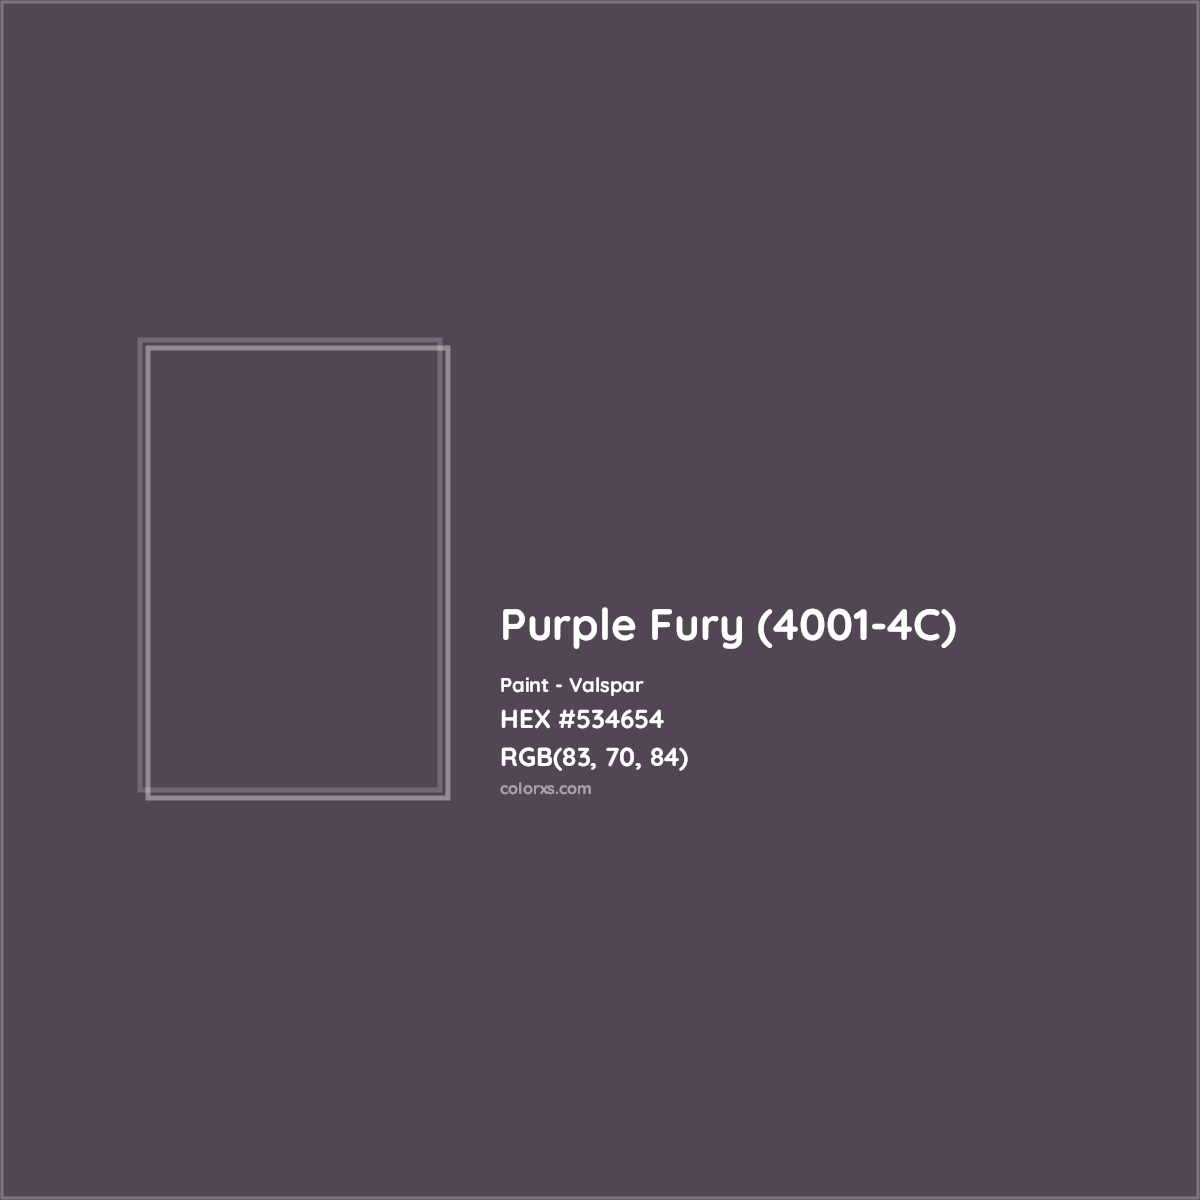 HEX #534654 Purple Fury (4001-4C) Paint Valspar - Color Code